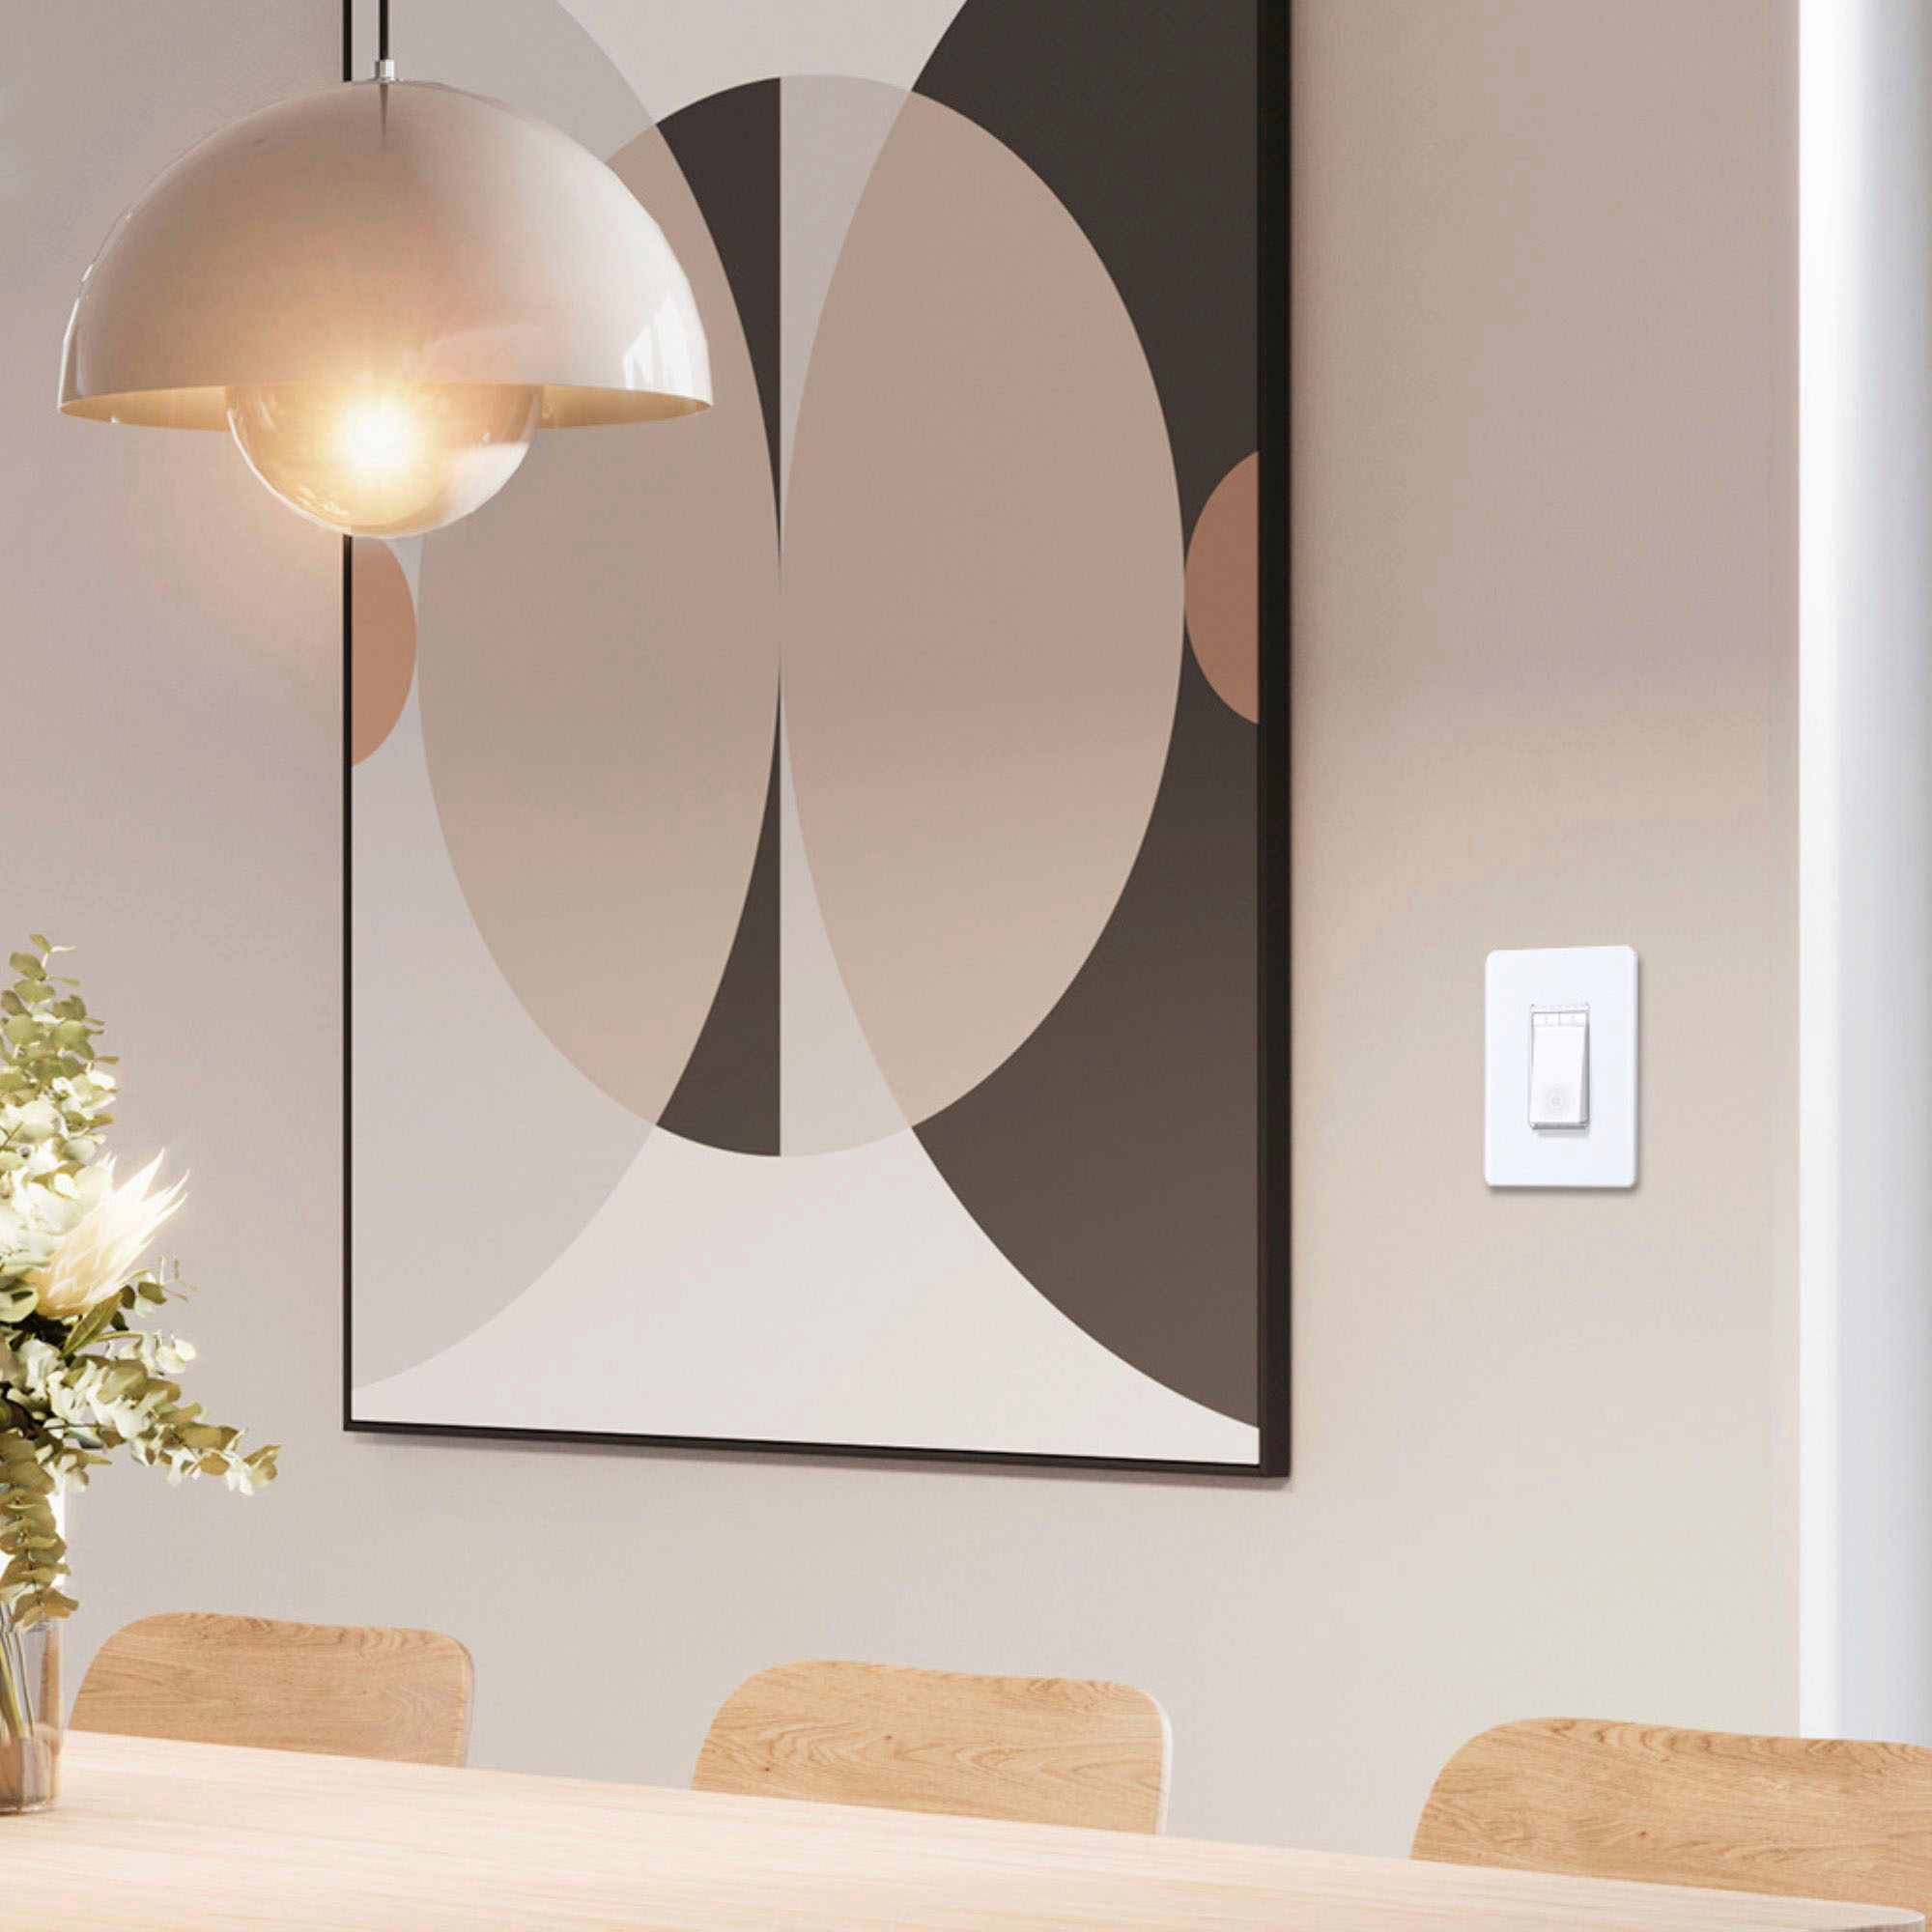 TP-Link Tapo Matter Smart Light Switch: control de voz con Siri, Alexa y  Google Home | Certificado UL | Temporizador y horario | Fácil instalación